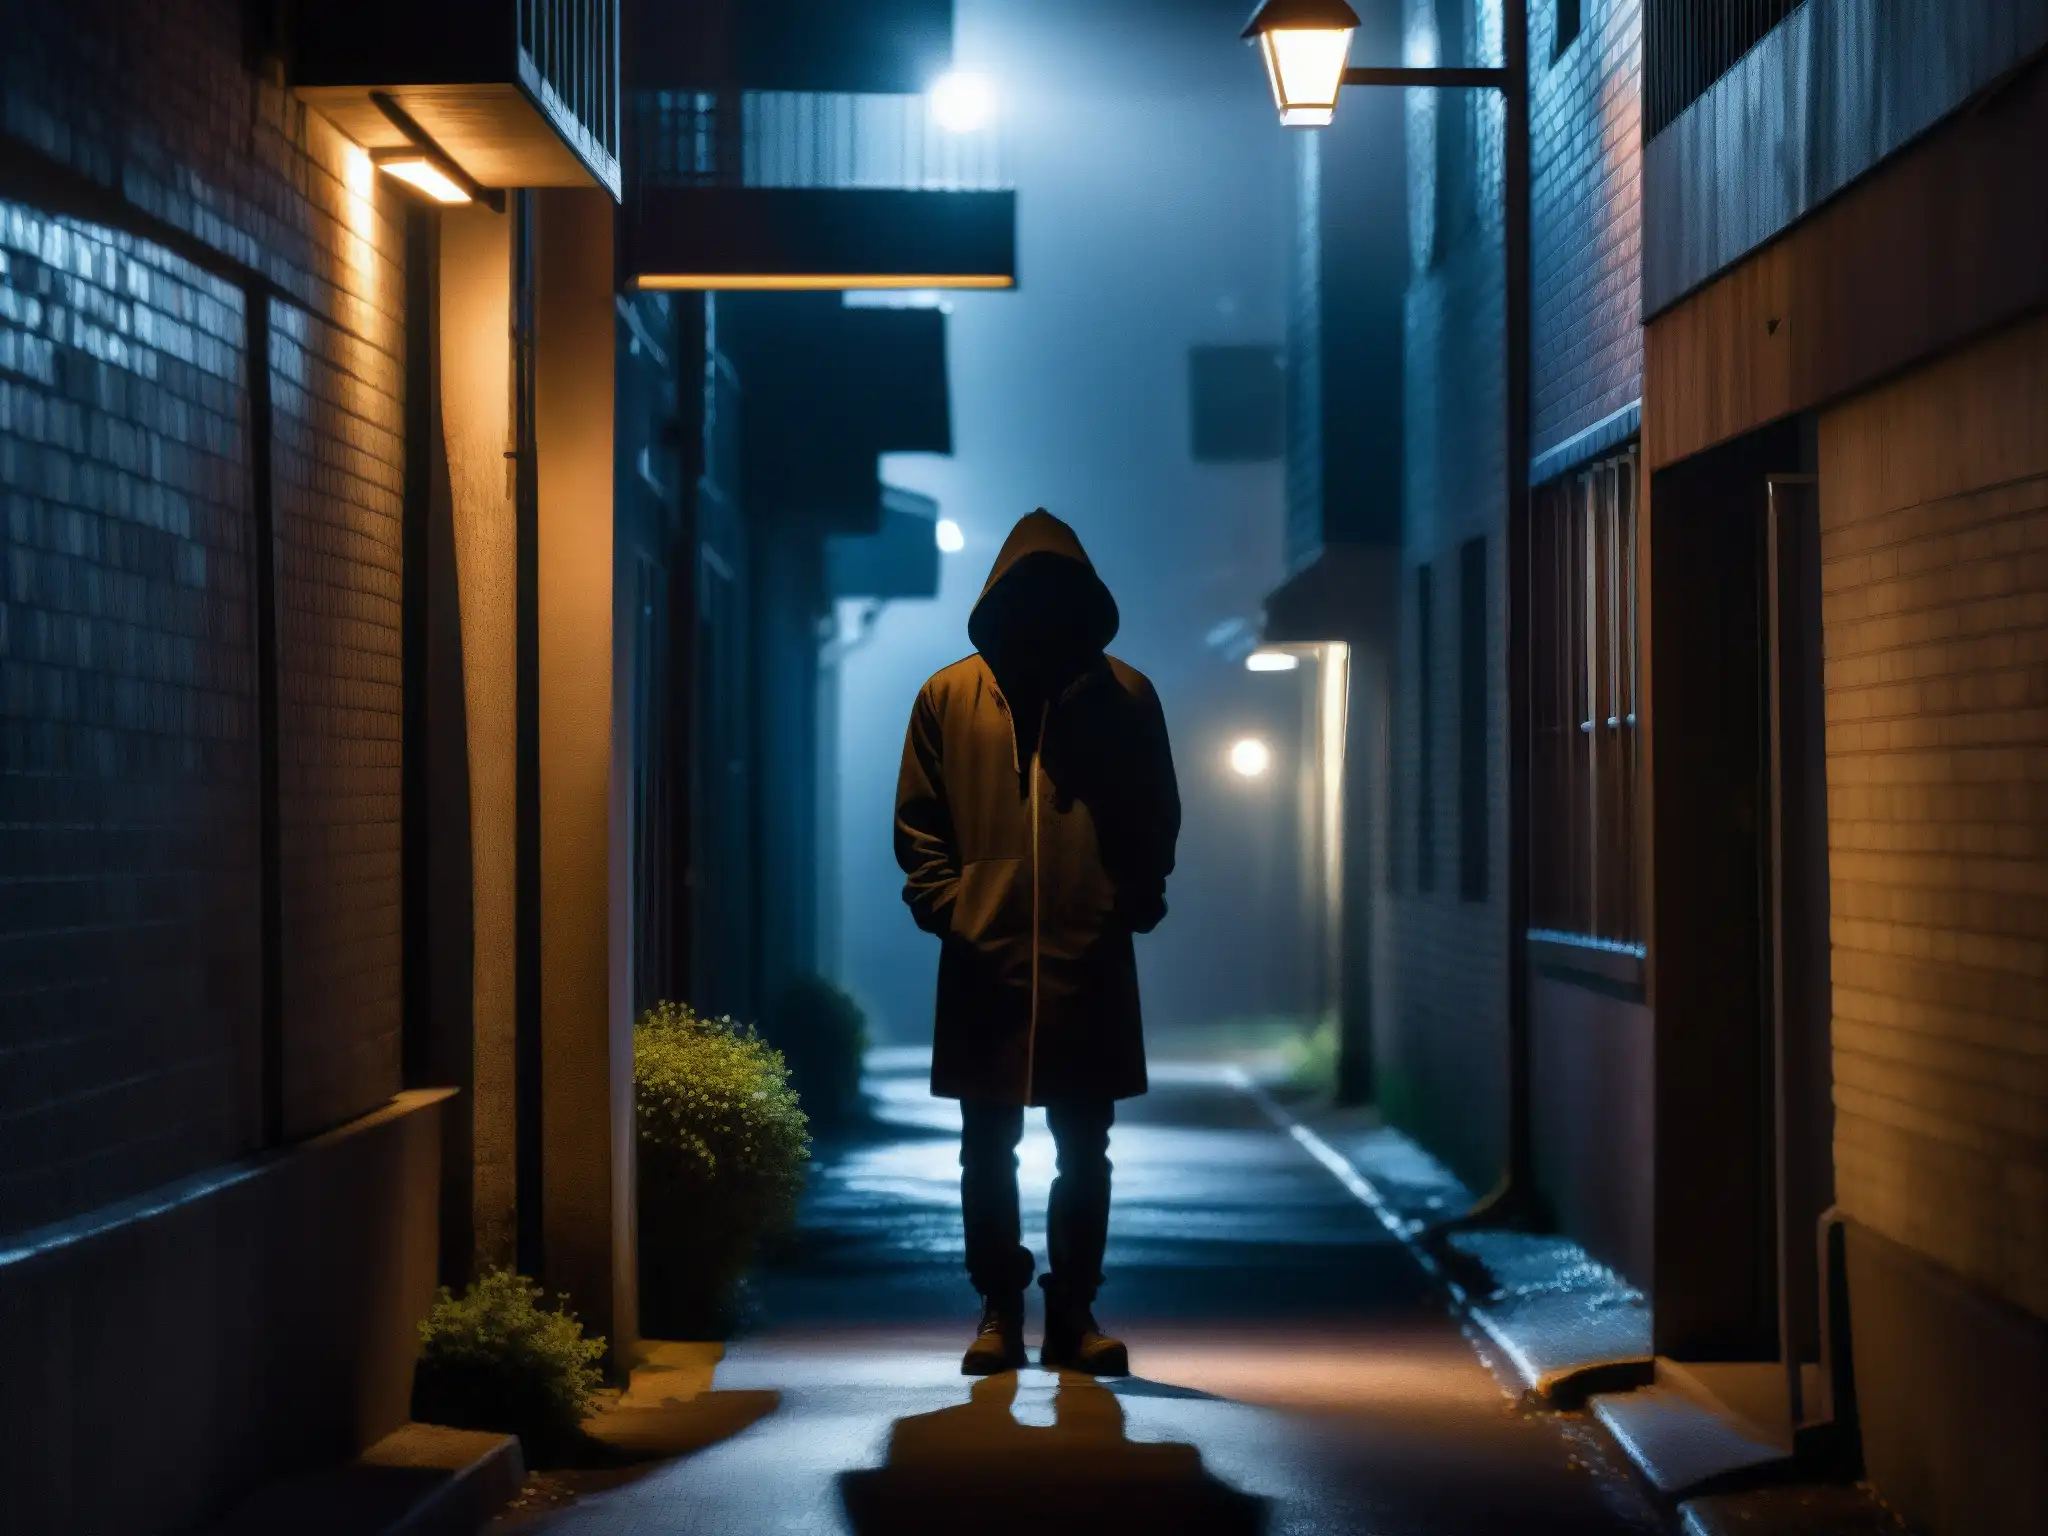 Enigmática silueta en callejón sombrío bajo luz tenue, reflejando la psicología detrás leyendas urbanas digitales